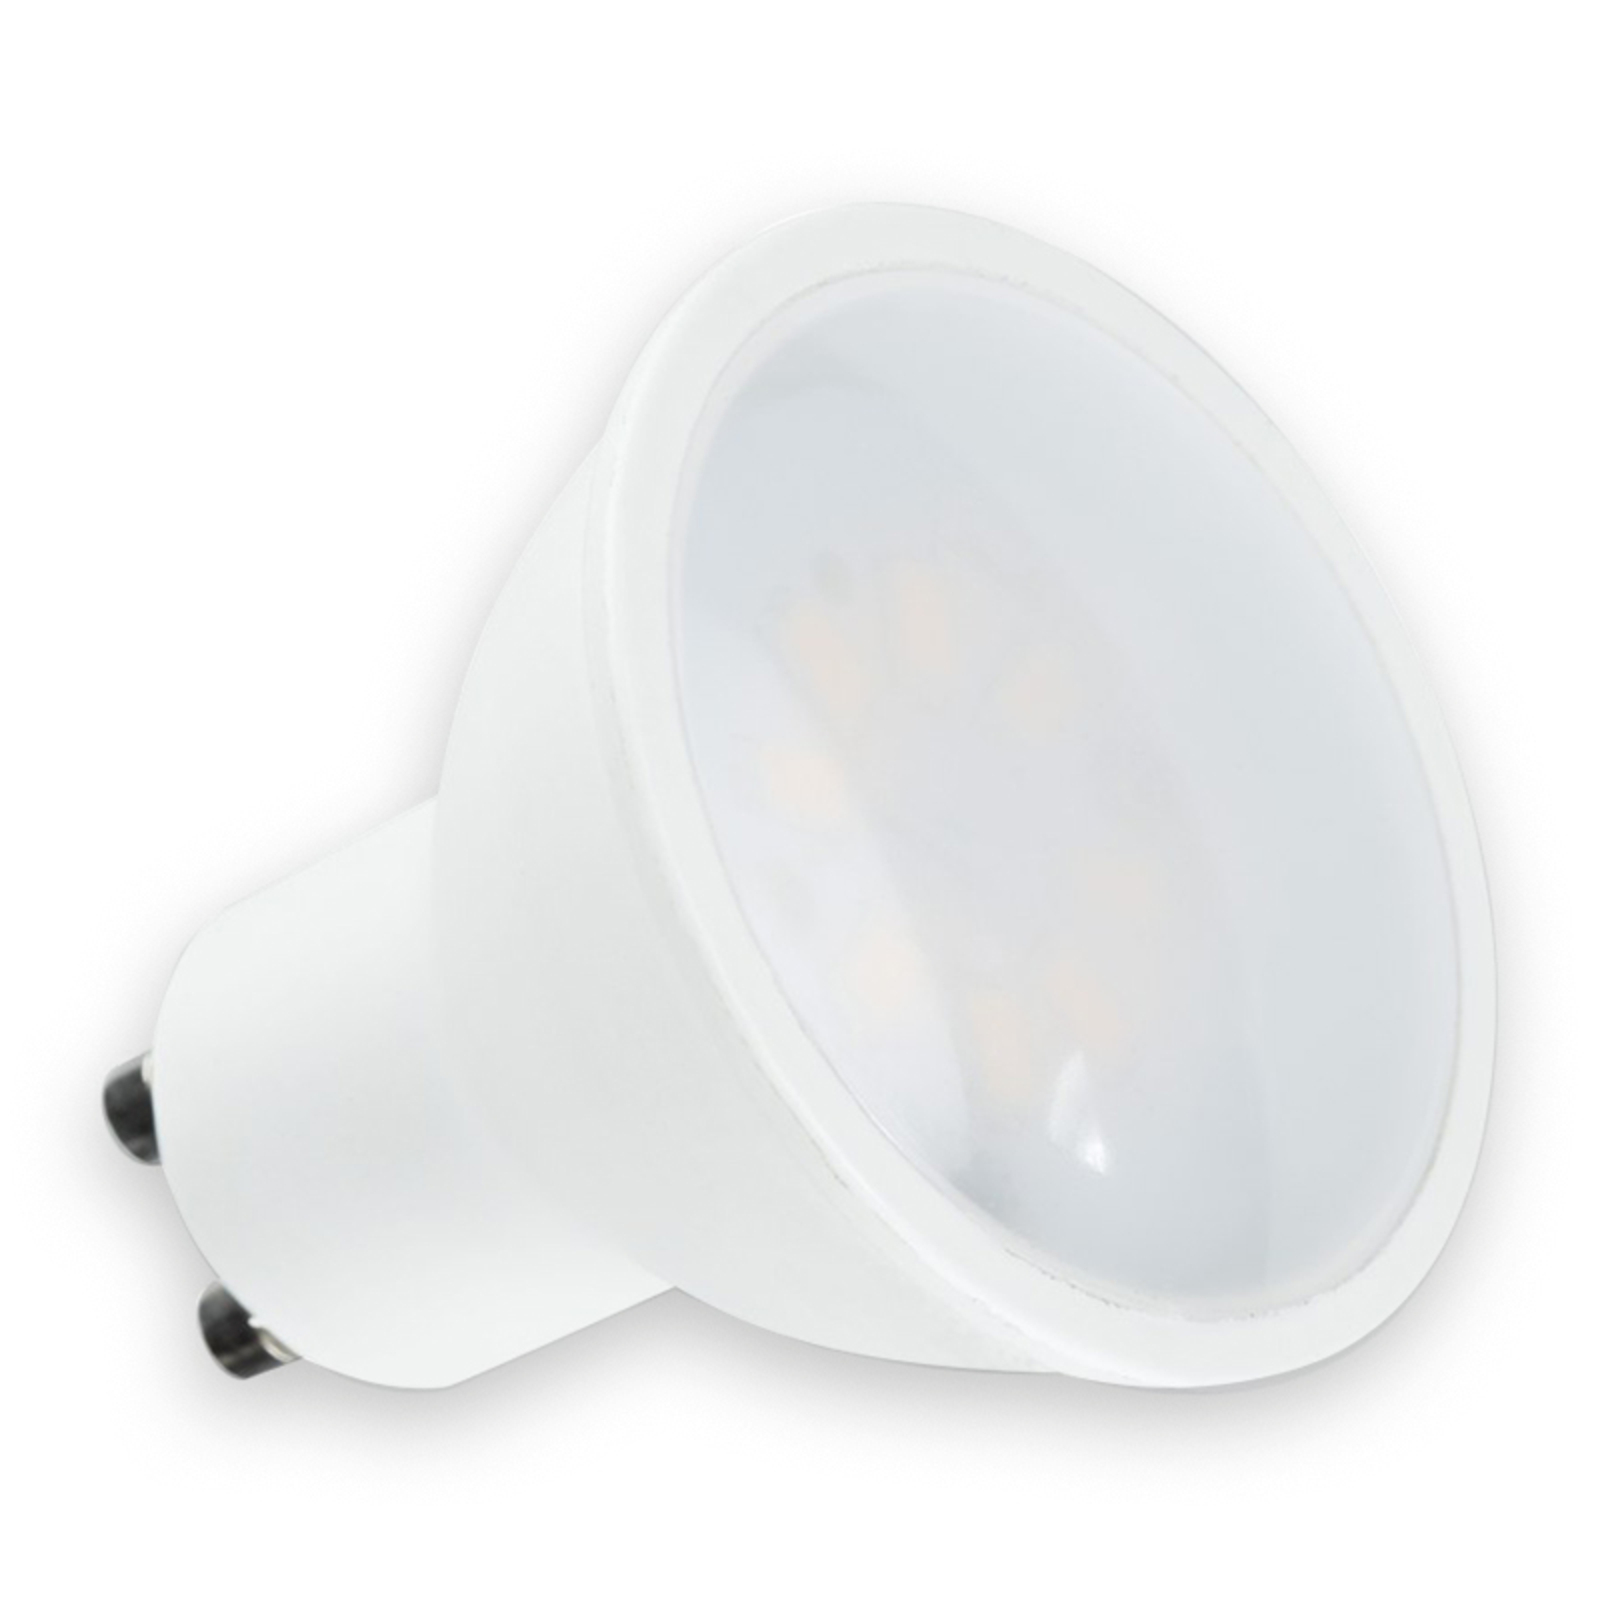 GU10 3.5W 827 120° RA90 reflector LED bulb